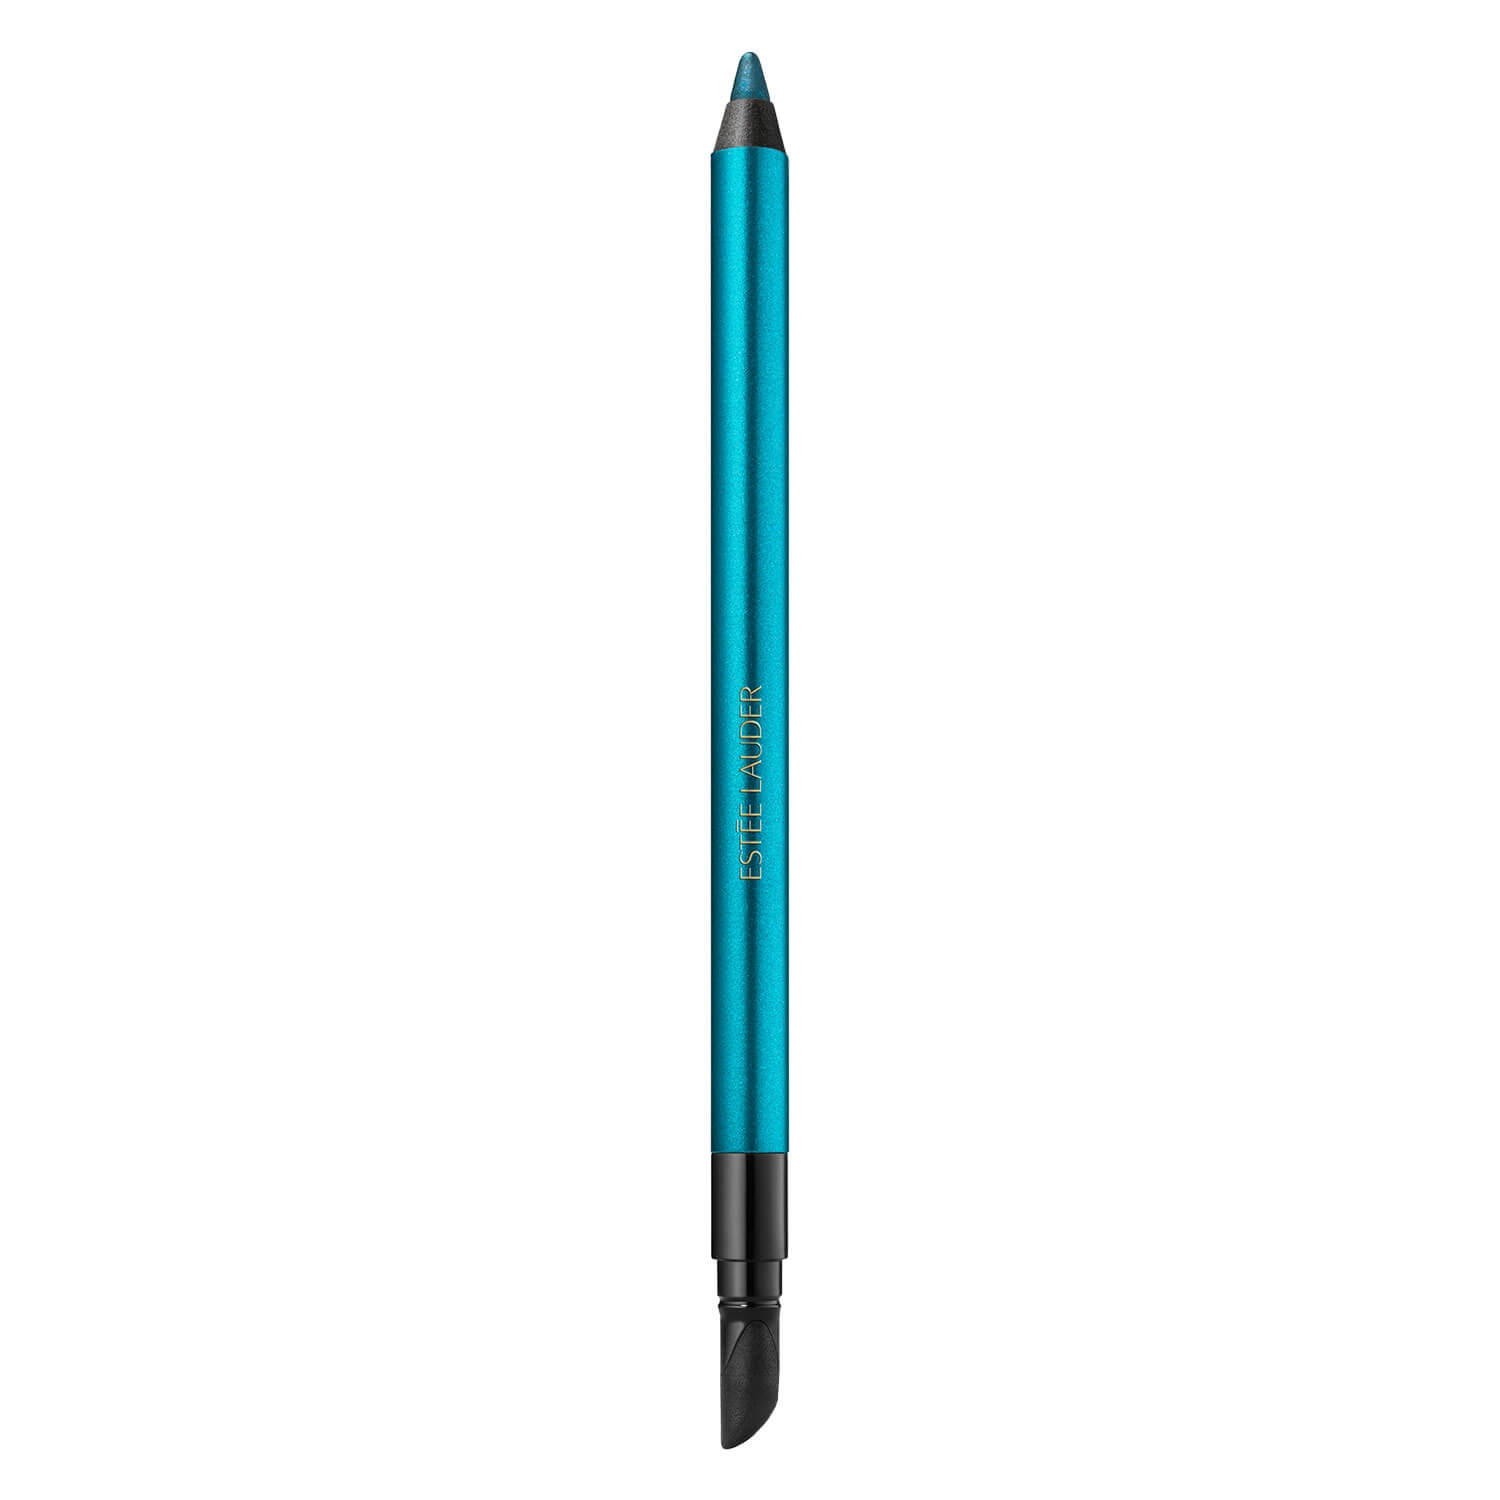 Produktbild von Double Wear - 24H Waterproof Gel Eye Pencil Turquoise